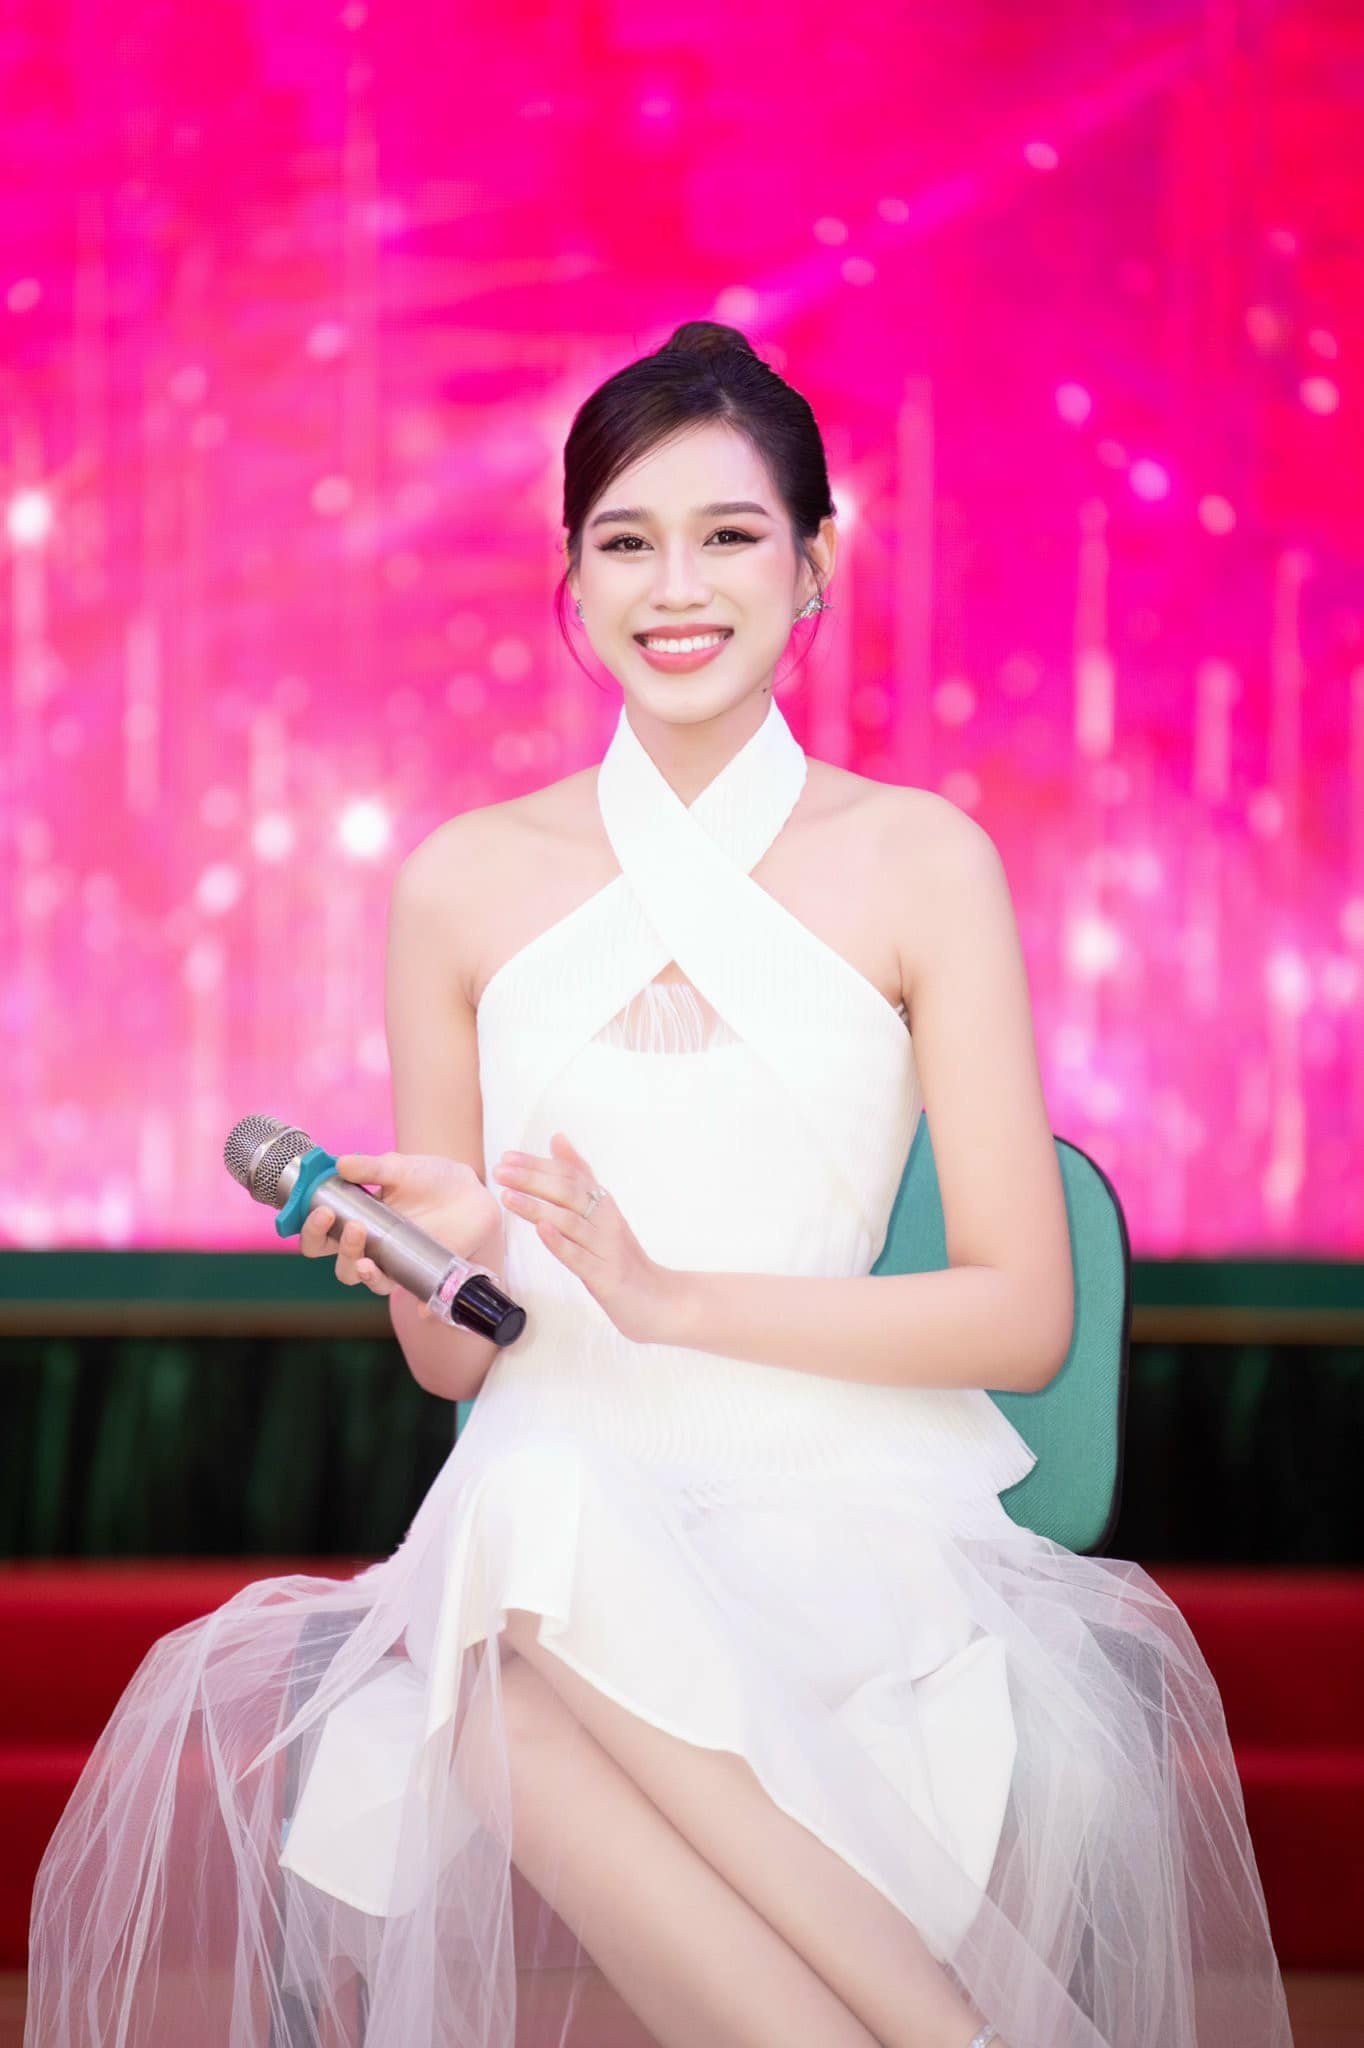 Hoa hậu Ngọc Châu quyến rũ khi mặc váy cưới - ảnh 16